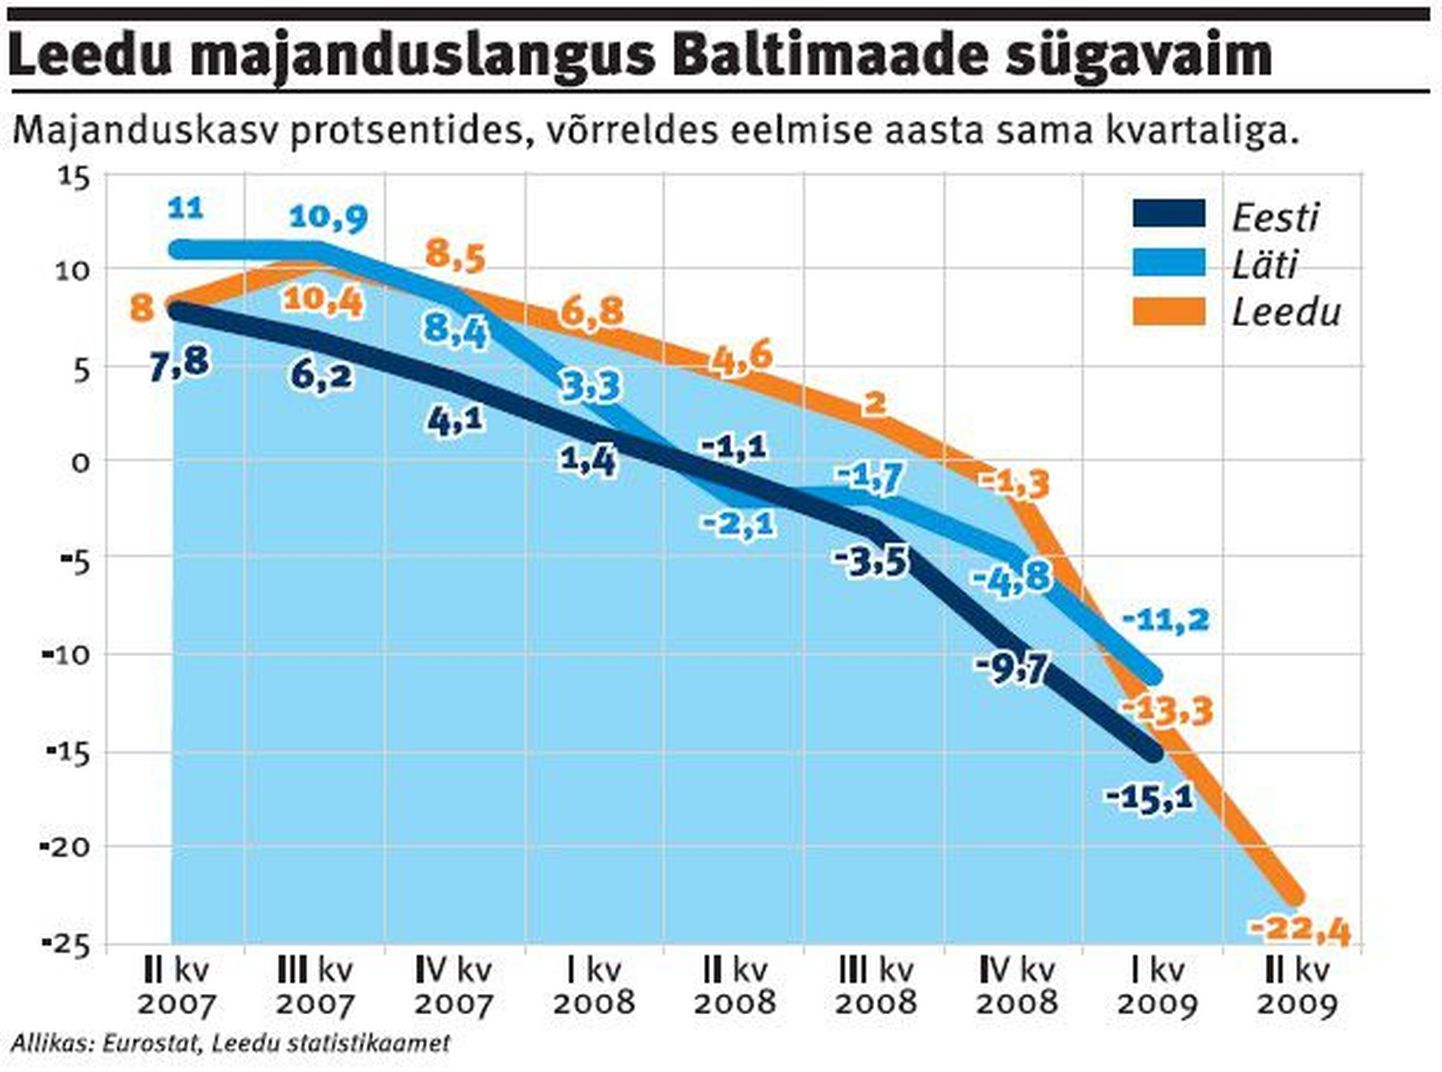 Leedu majanduslangus on Baltimaade sügavaim.